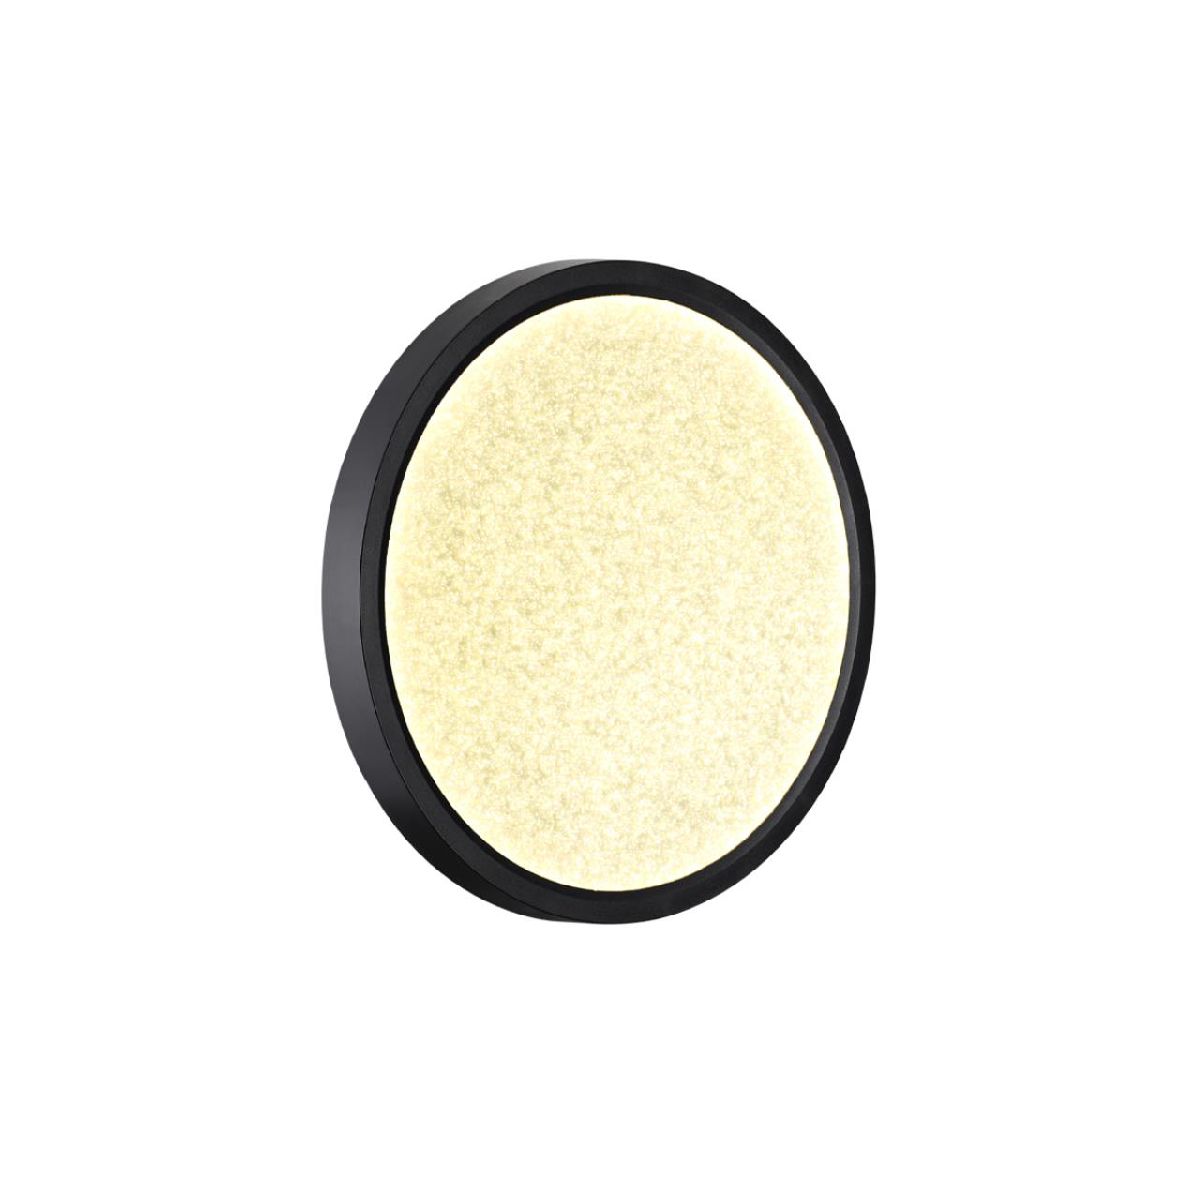 Настенно-потолочный светильник Sonex Omega black 7662/18L